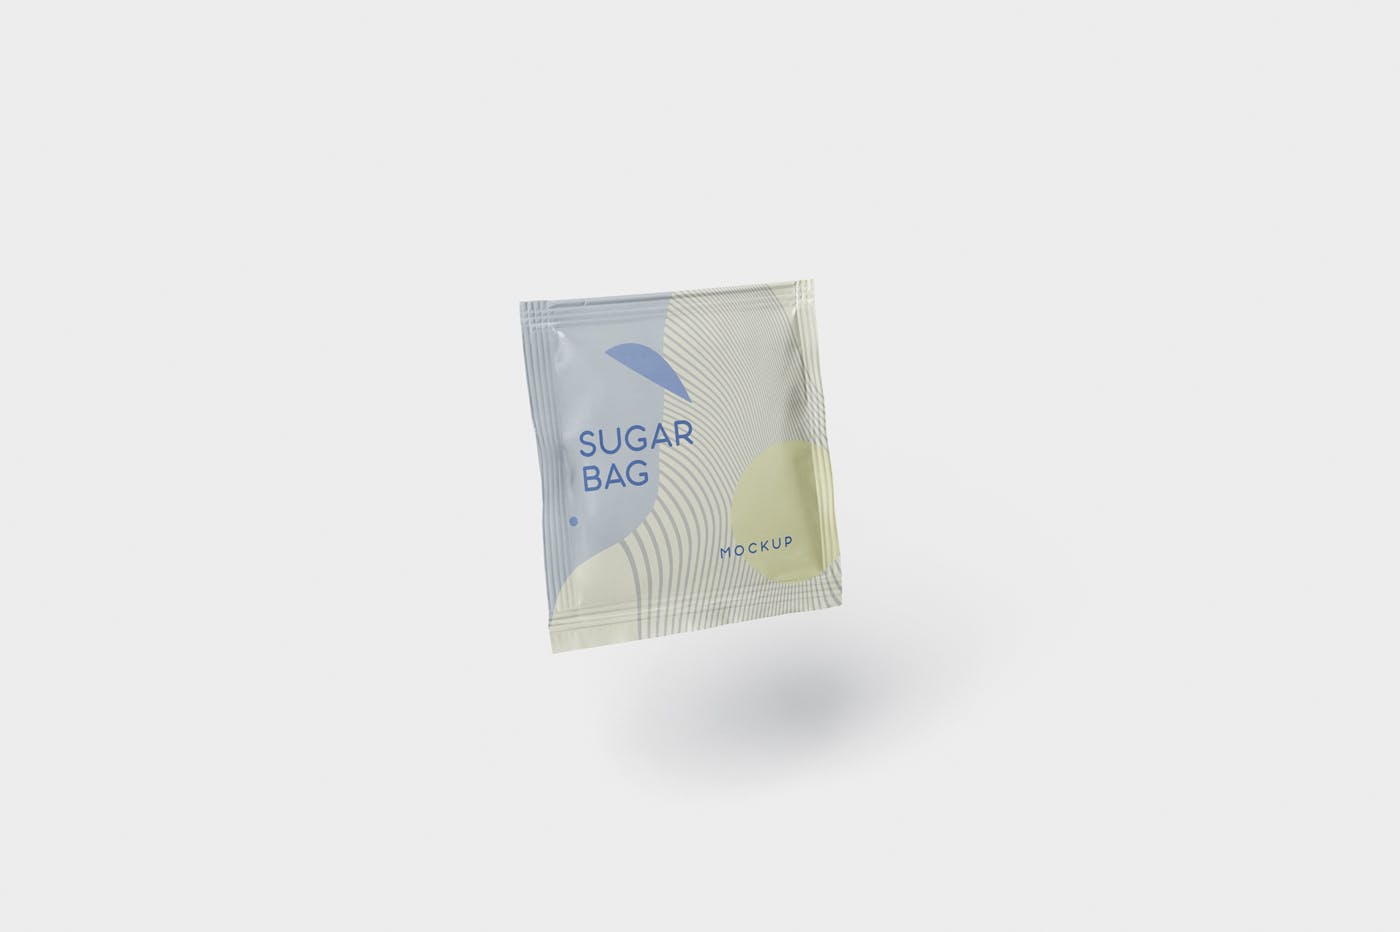 盐袋糖袋包装设计效果图素材中国精选 Salt OR Sugar Bag Mockup – Square Shaped插图(4)